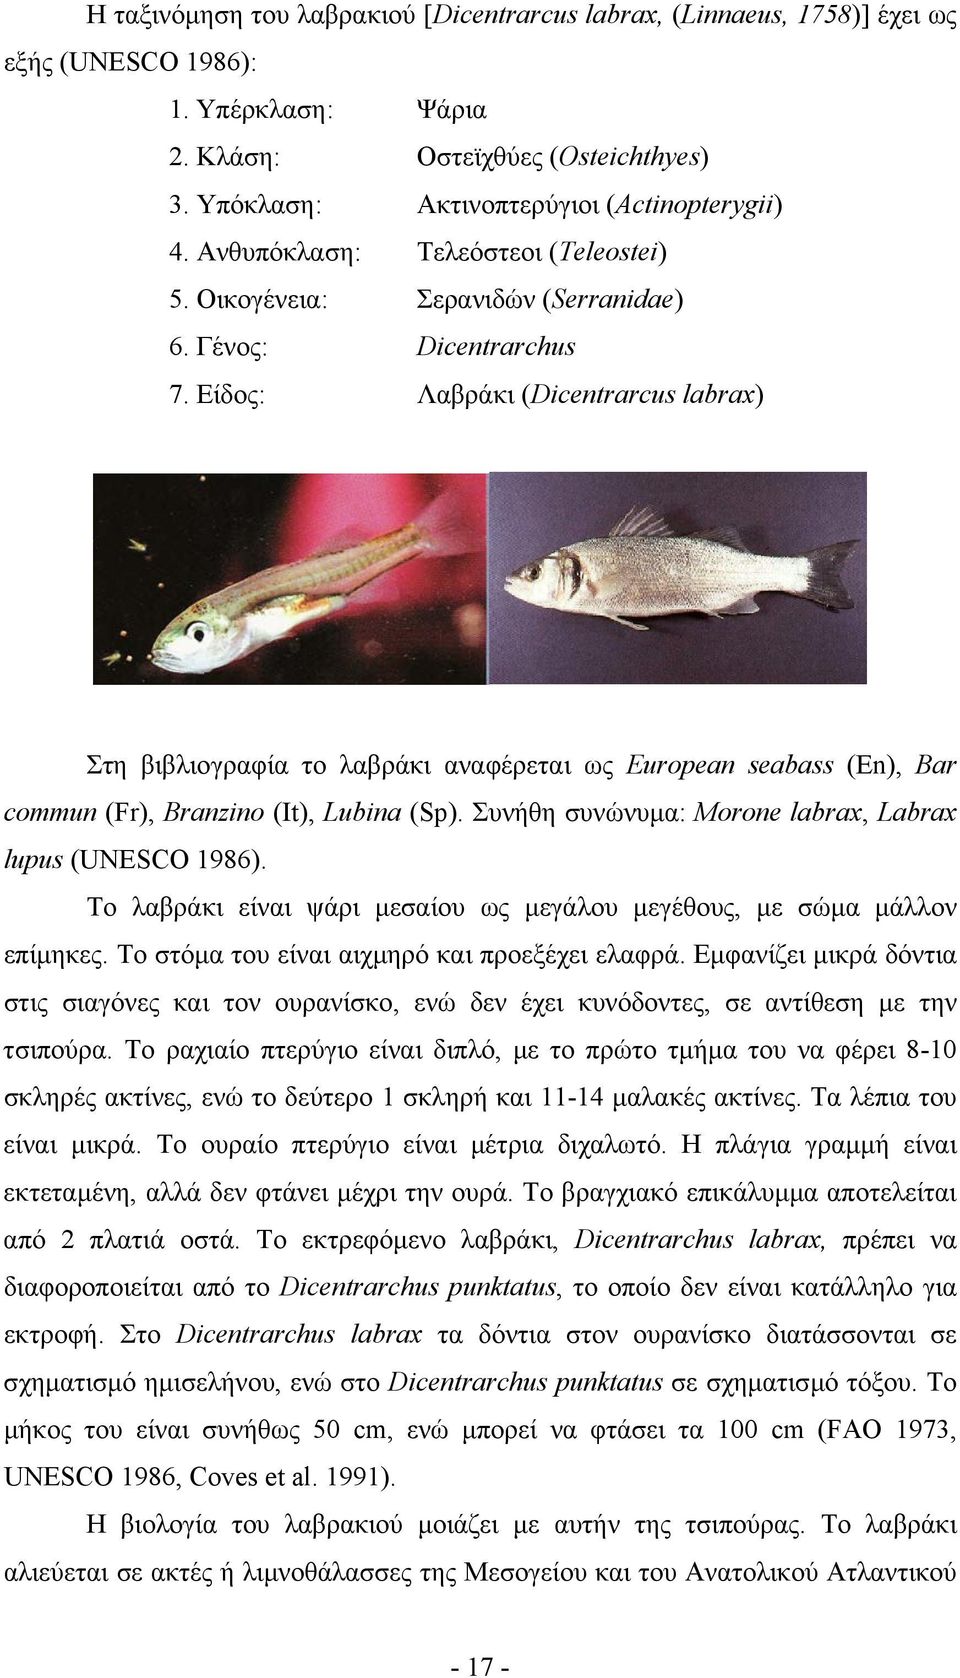 Είδος: Λαβράκι (Dicentrarcus labrax) Στη βιβλιογραφία το λαβράκι αναφέρεται ως European seabass (En), Bar commun (Fr), Branzino (It), Lubina (Sp).